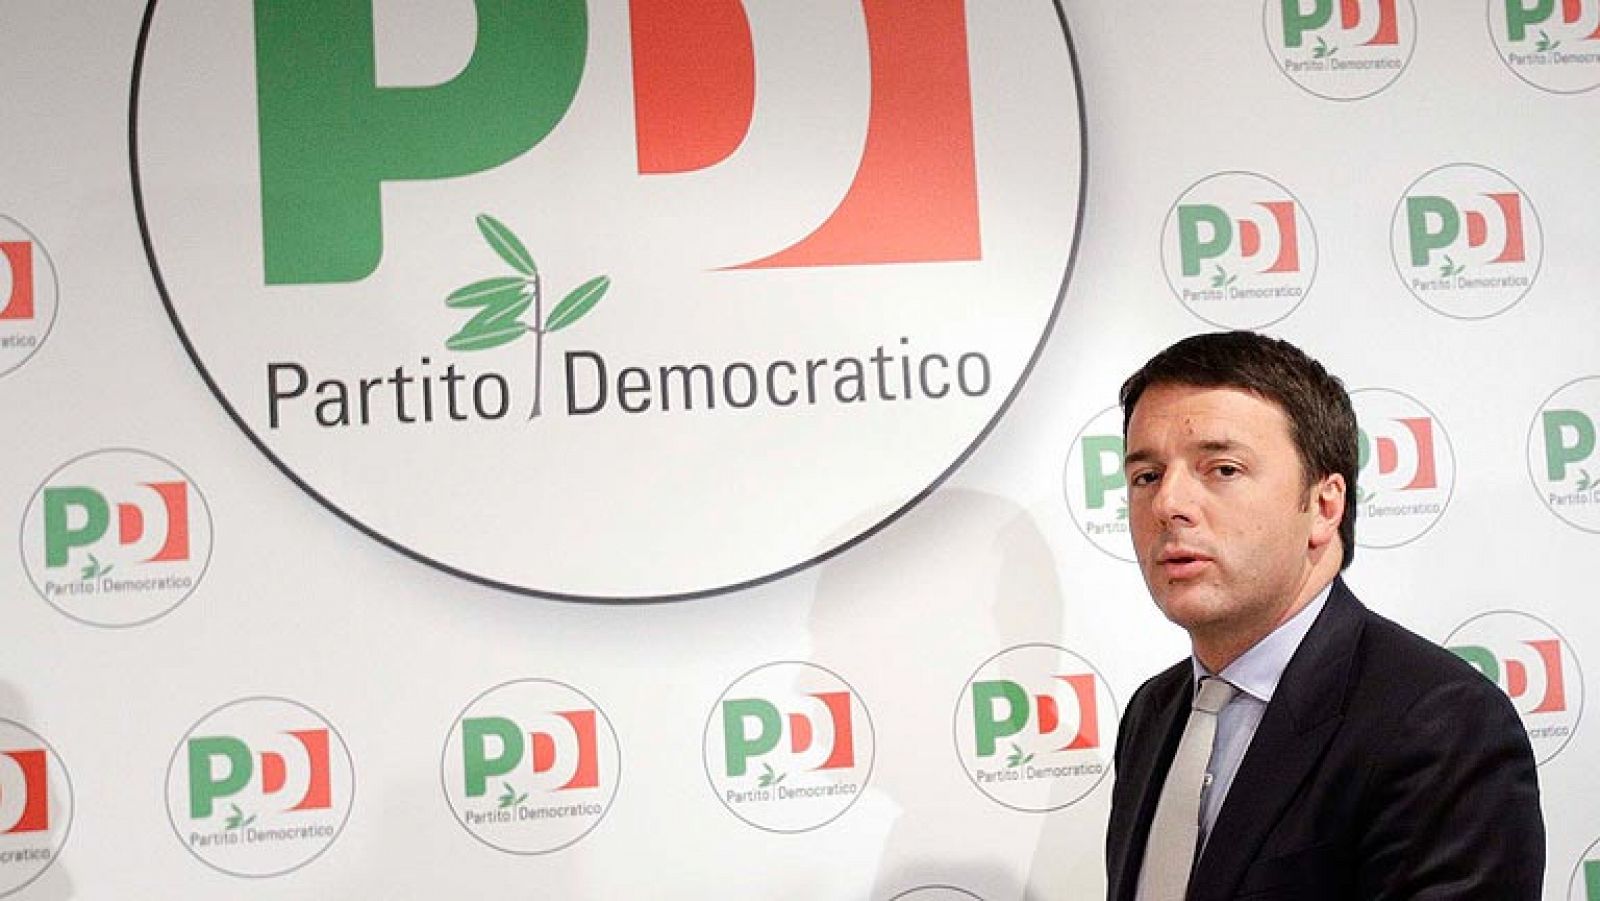 Renzi sustituirá a Letta sin haber pasado por las urnas